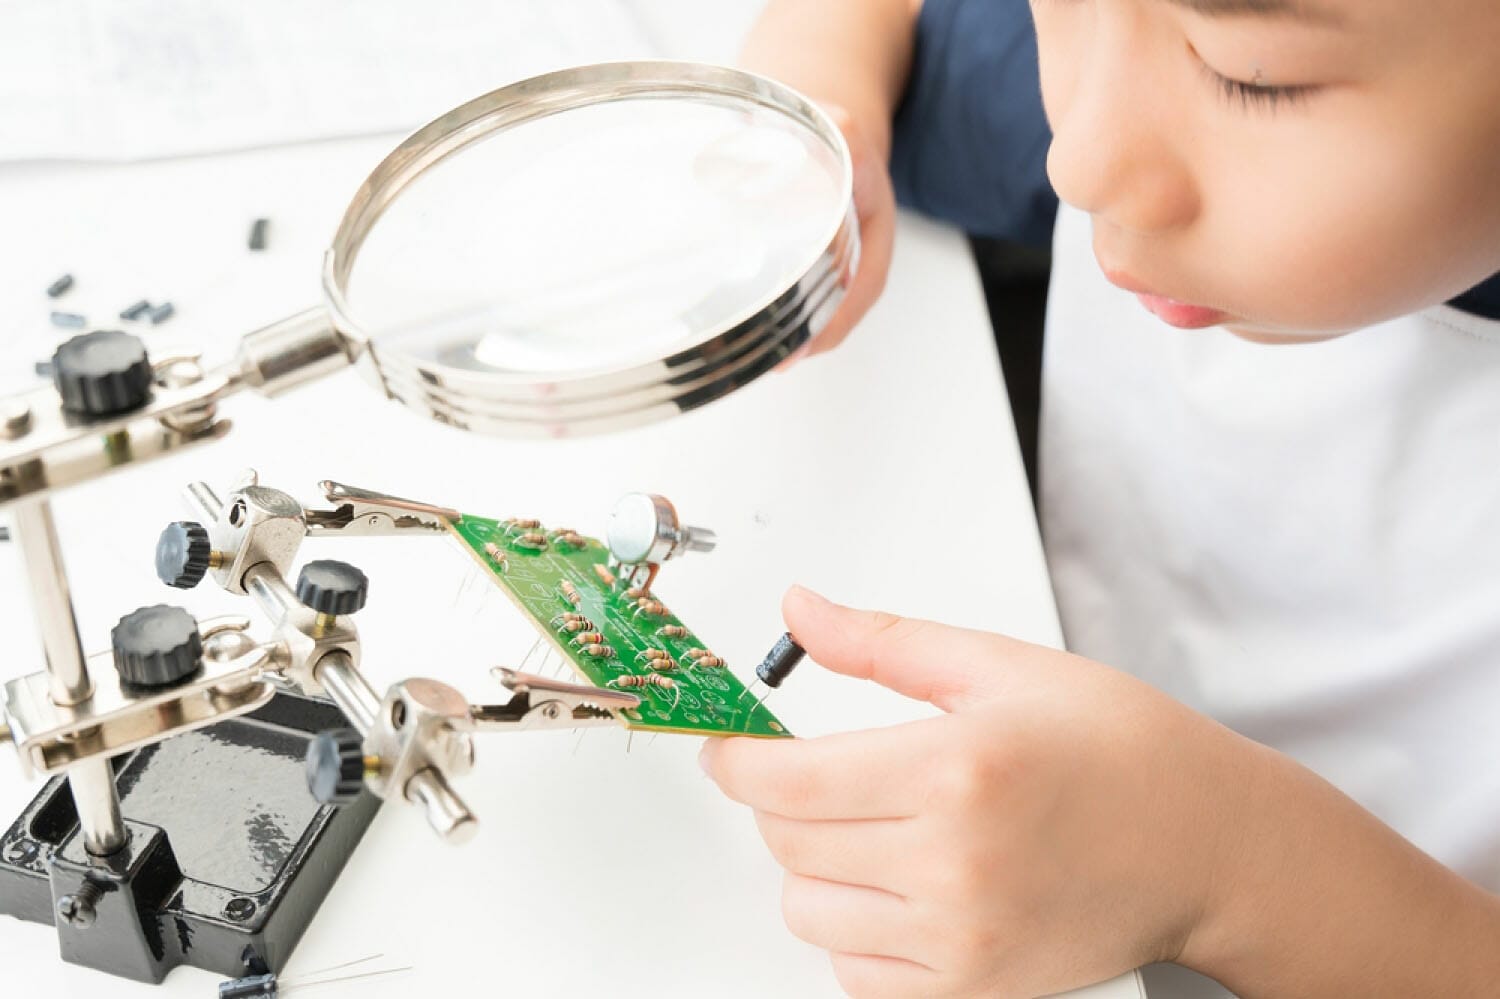 niño mirando a través de una lupa un circuito electrónico en una placa